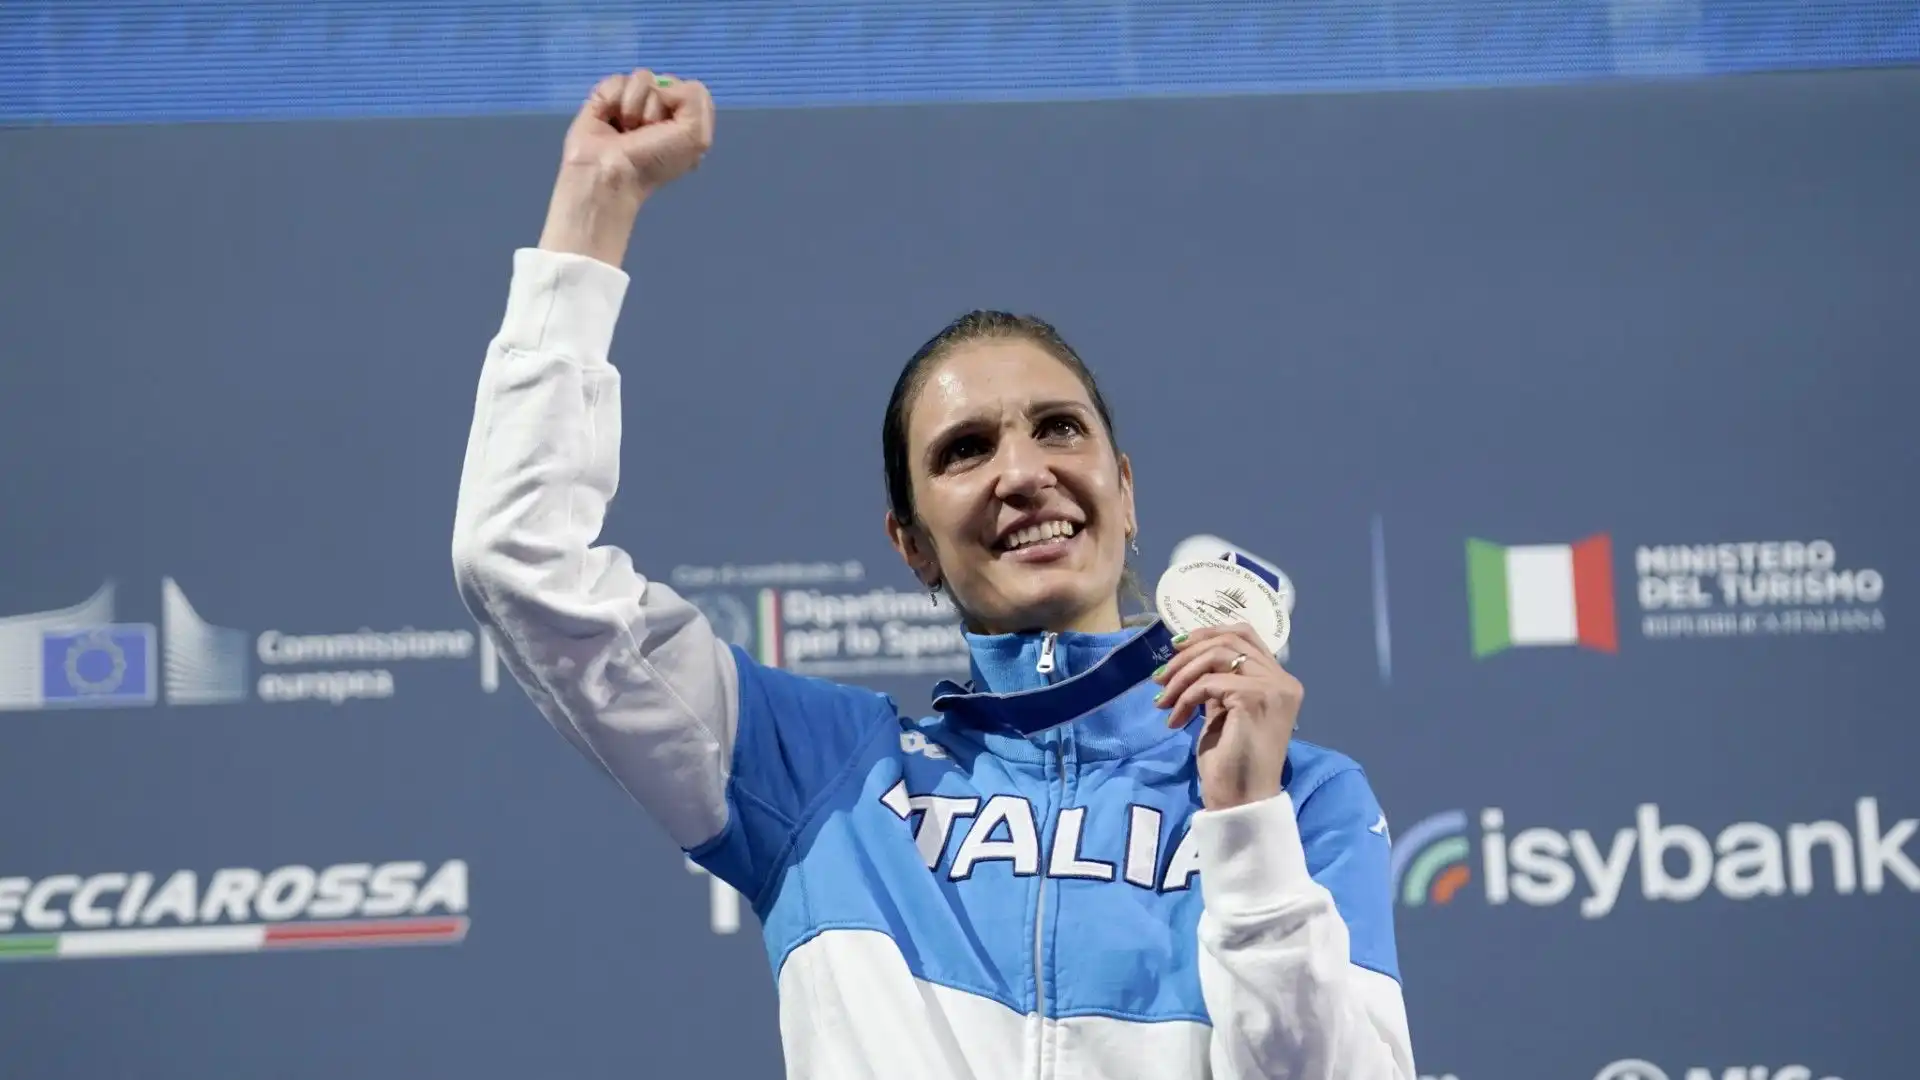 Arianna Errigo è pluricampionessa della scherma, oro nel fioretto a squadre e argento individuale a Londra 2012 e bronzo a squadre a Tokyo 2020